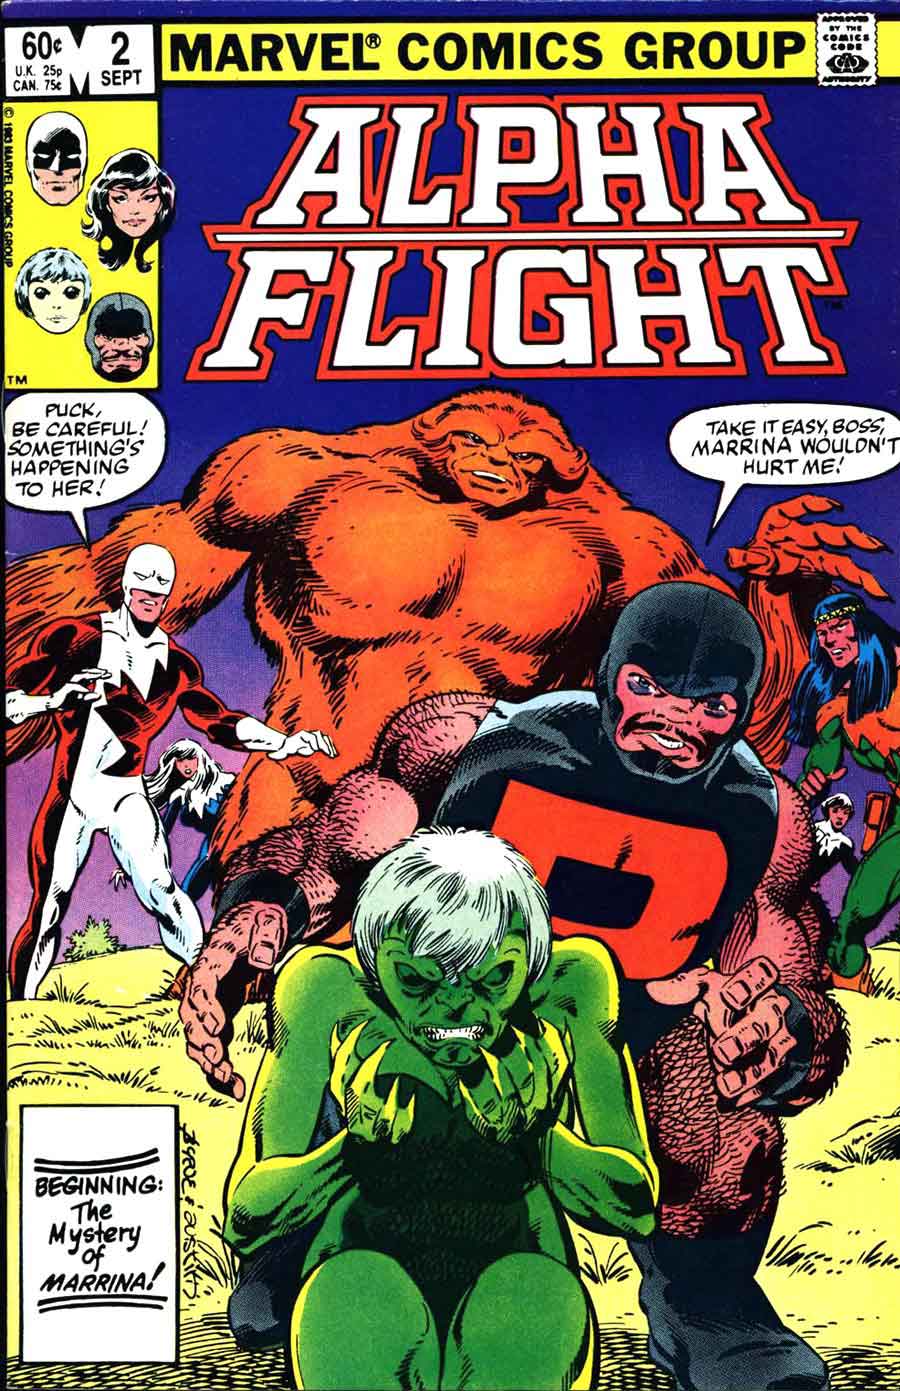 Alpha Flight v1 #2 marvel comic book cover art by John Byrne